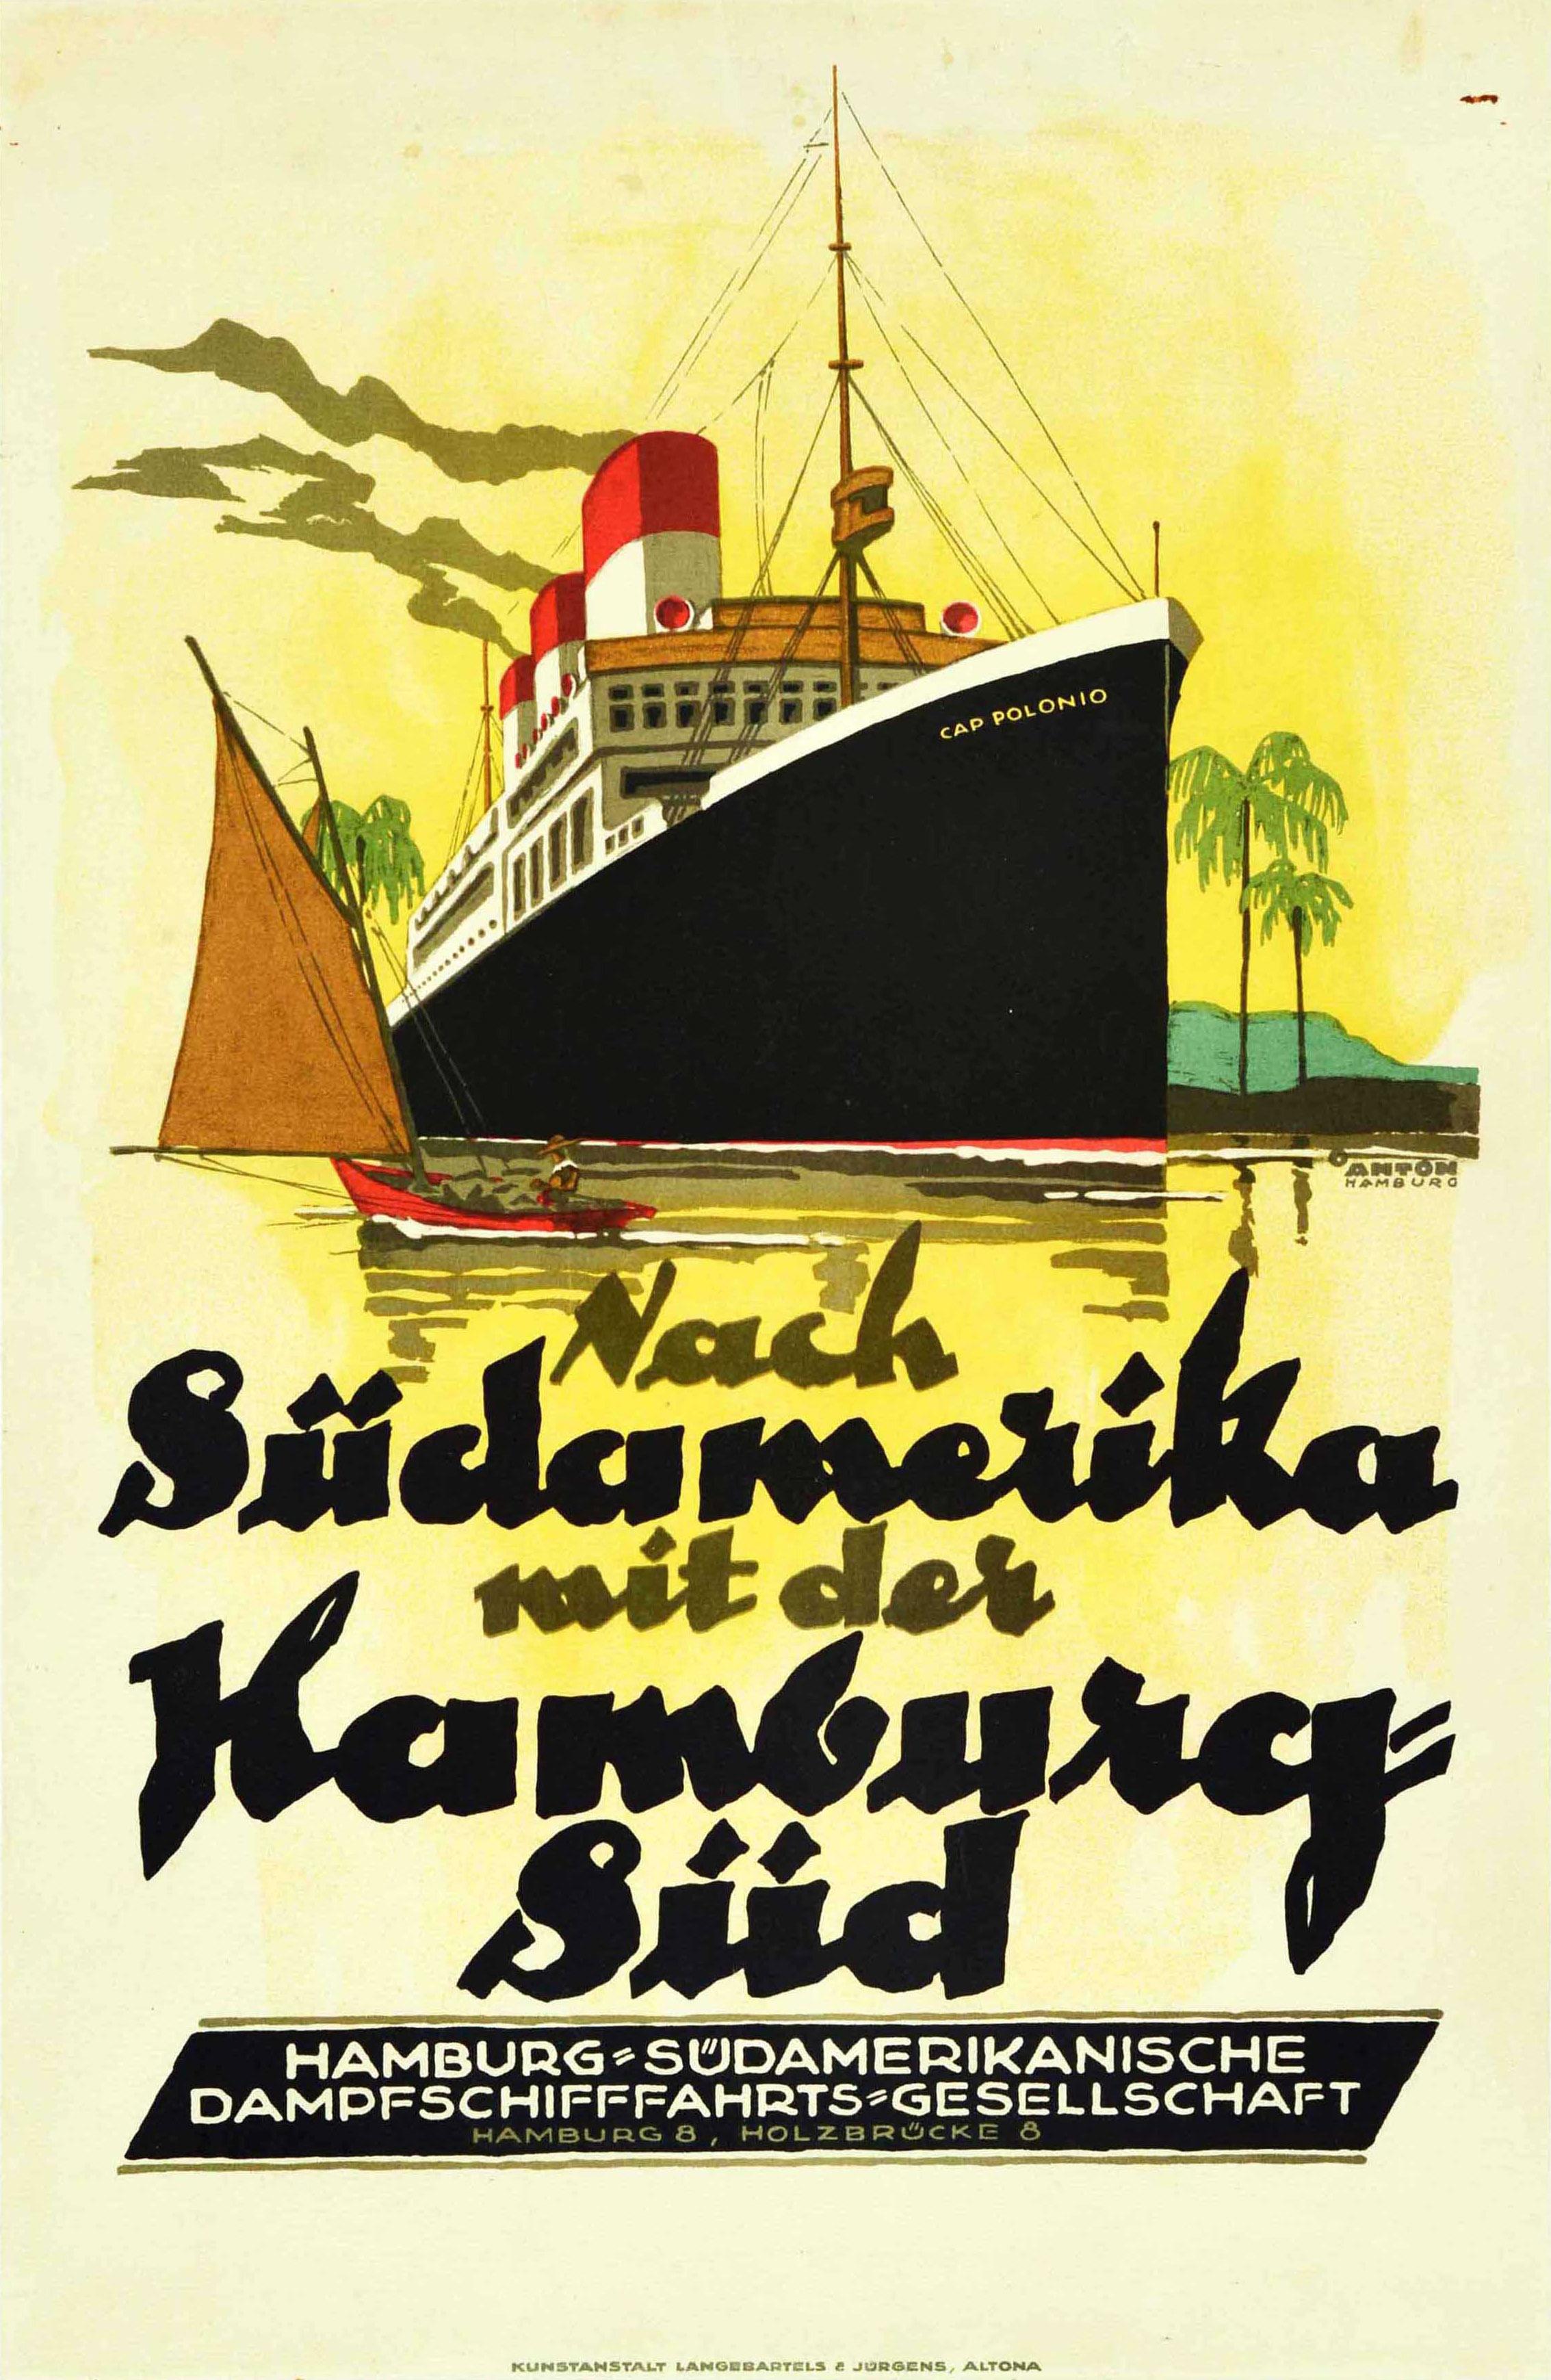 Print Ottomar Anton - Affiche rtro originale, Sudamerika S Amrique, Hamburg Sud Cruise Ship Cap Polonio